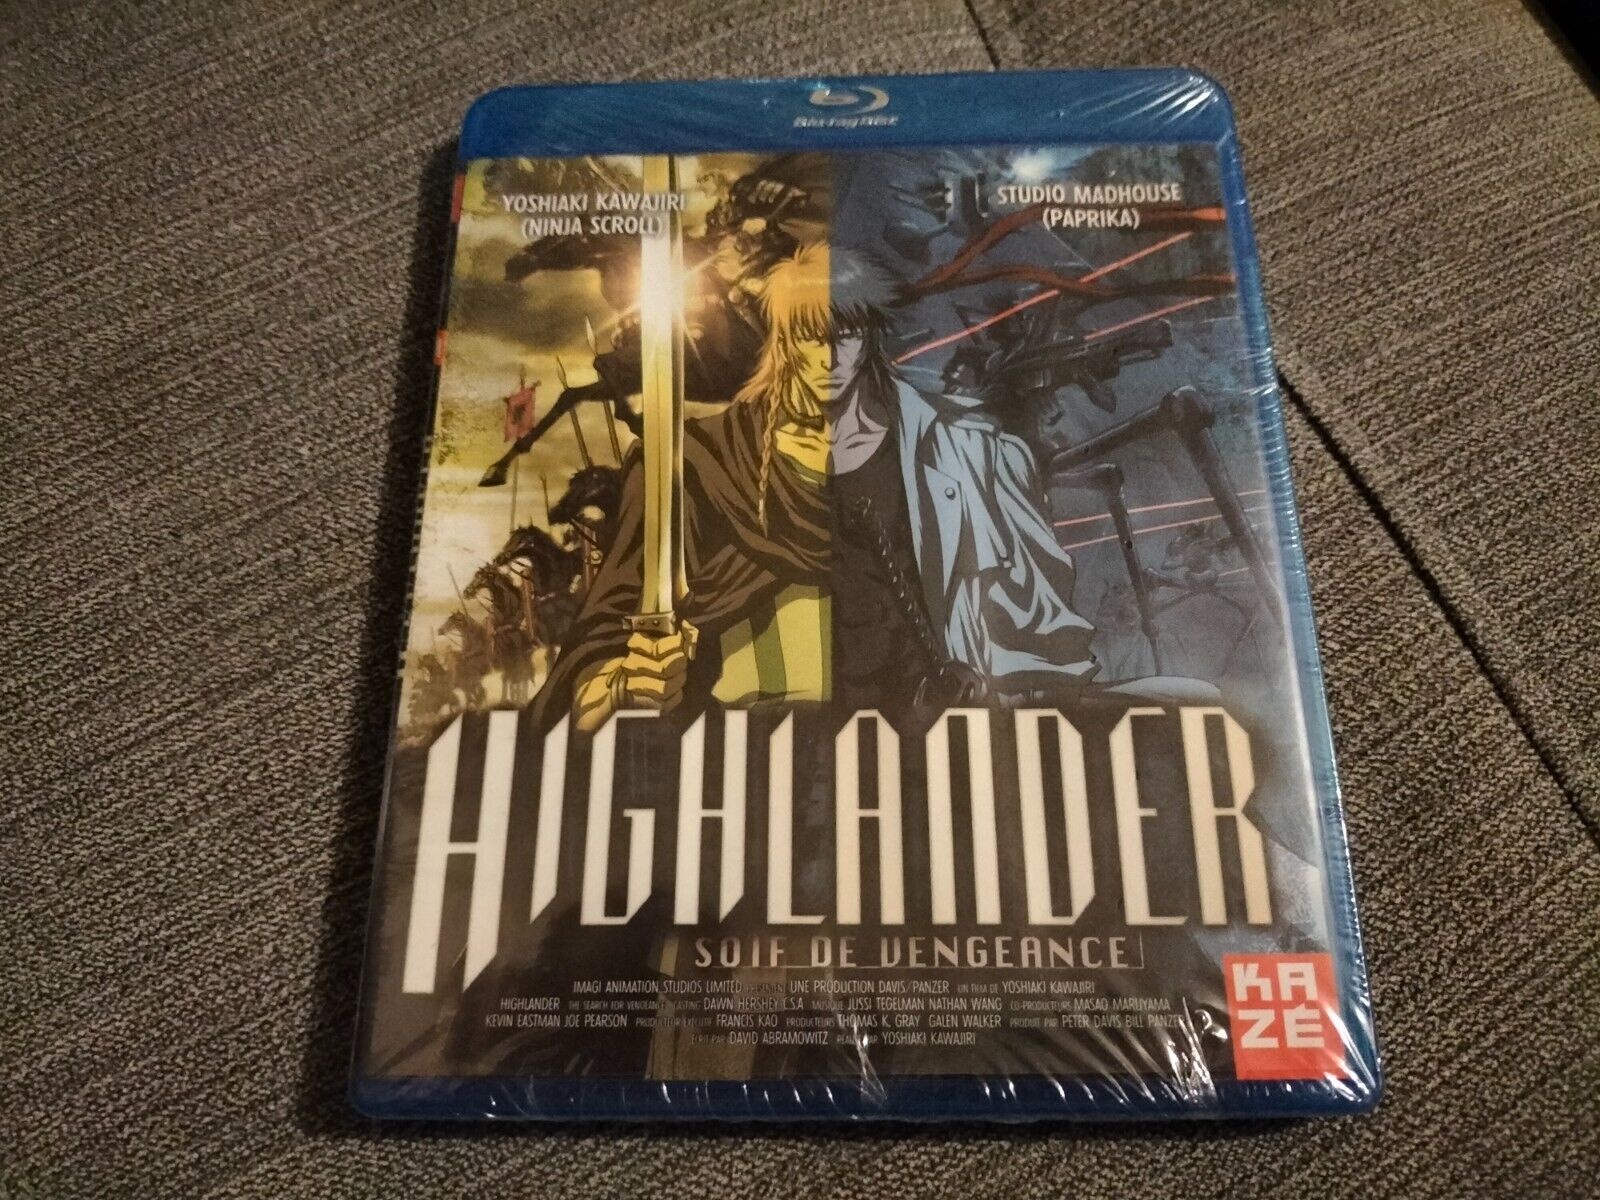 Highlander en Blu-Ray